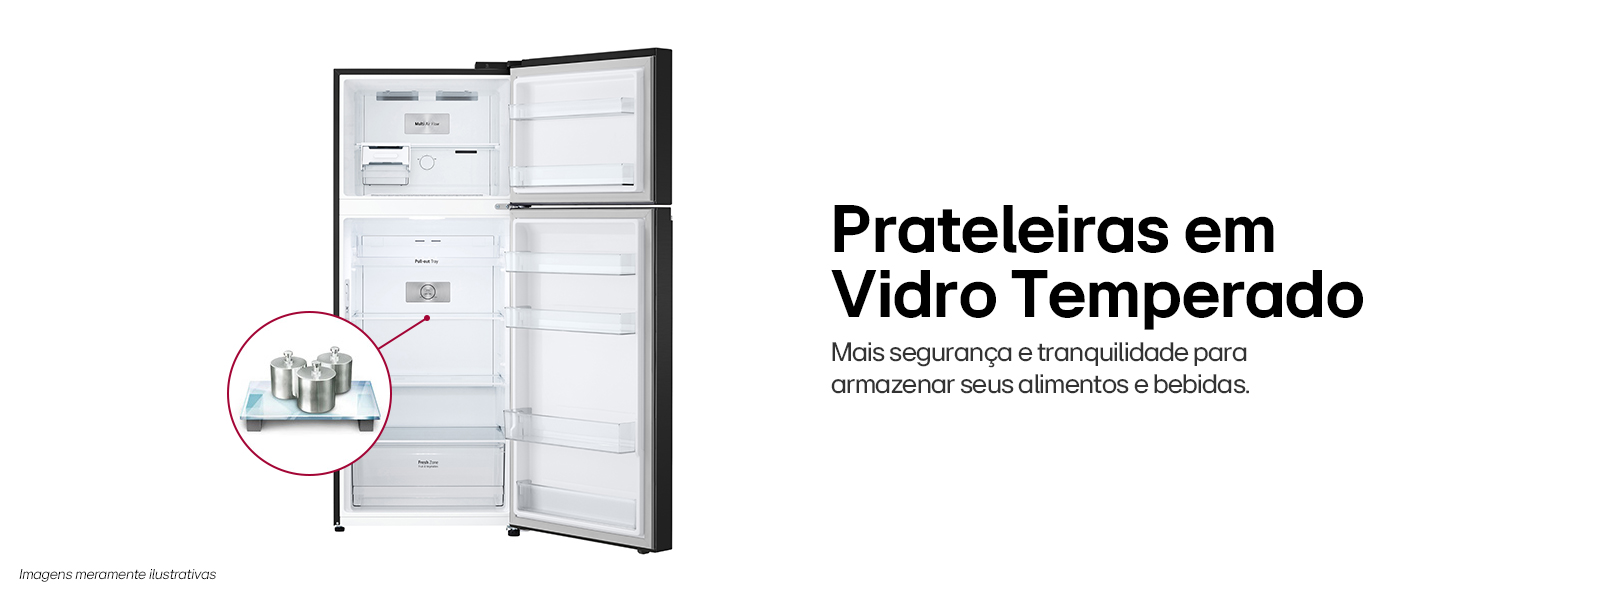 Imagem da geladeira com as portas abertas mostrando suas prateleiras de vidro temperado